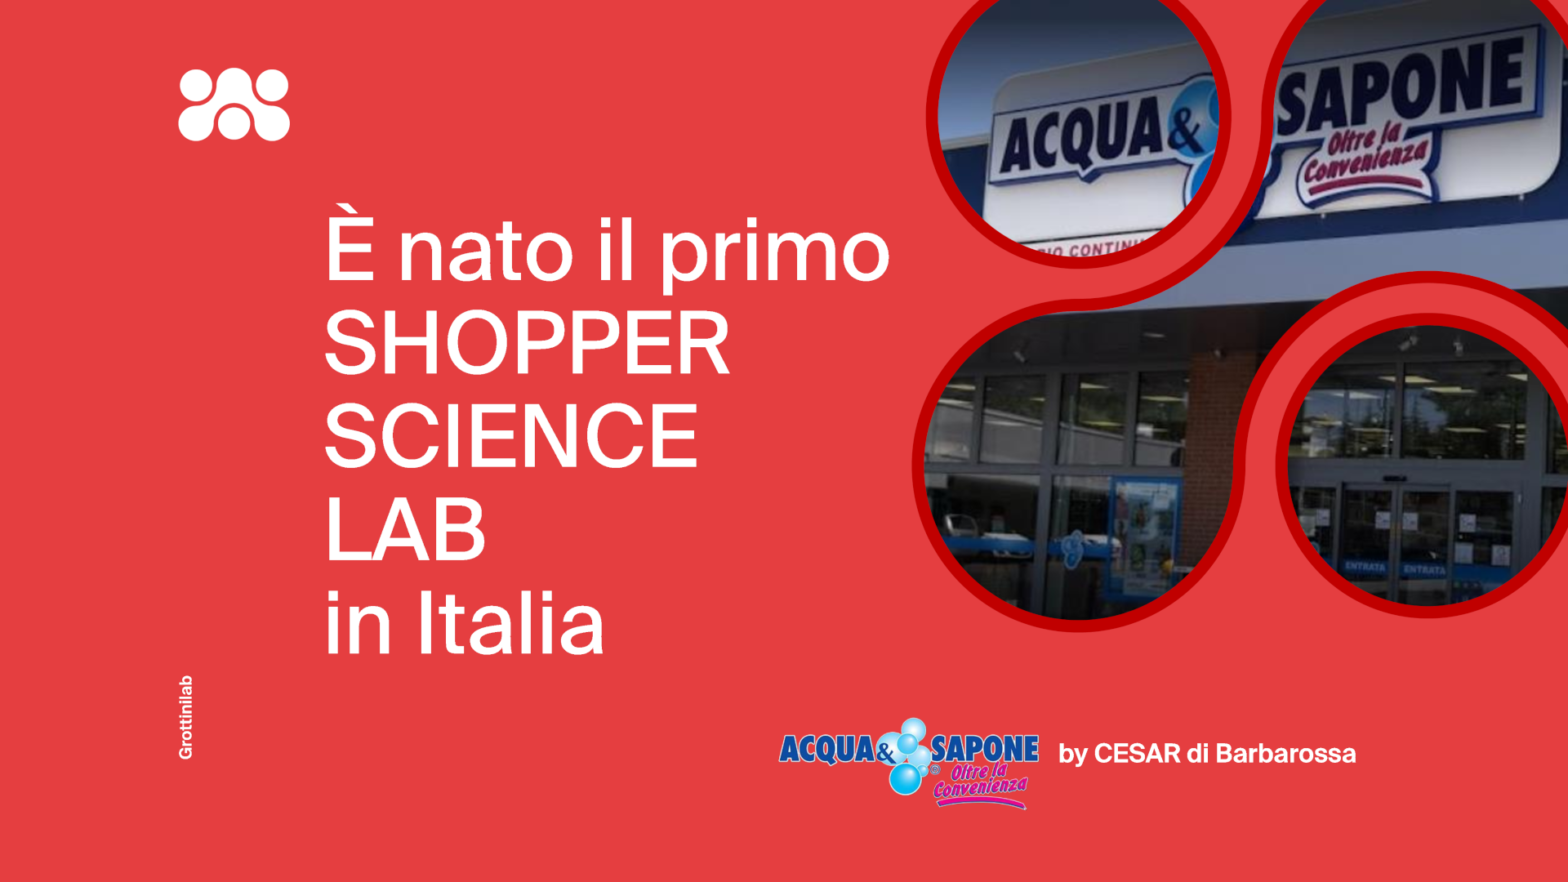 Shopper Science Lab Acqua & Sapone